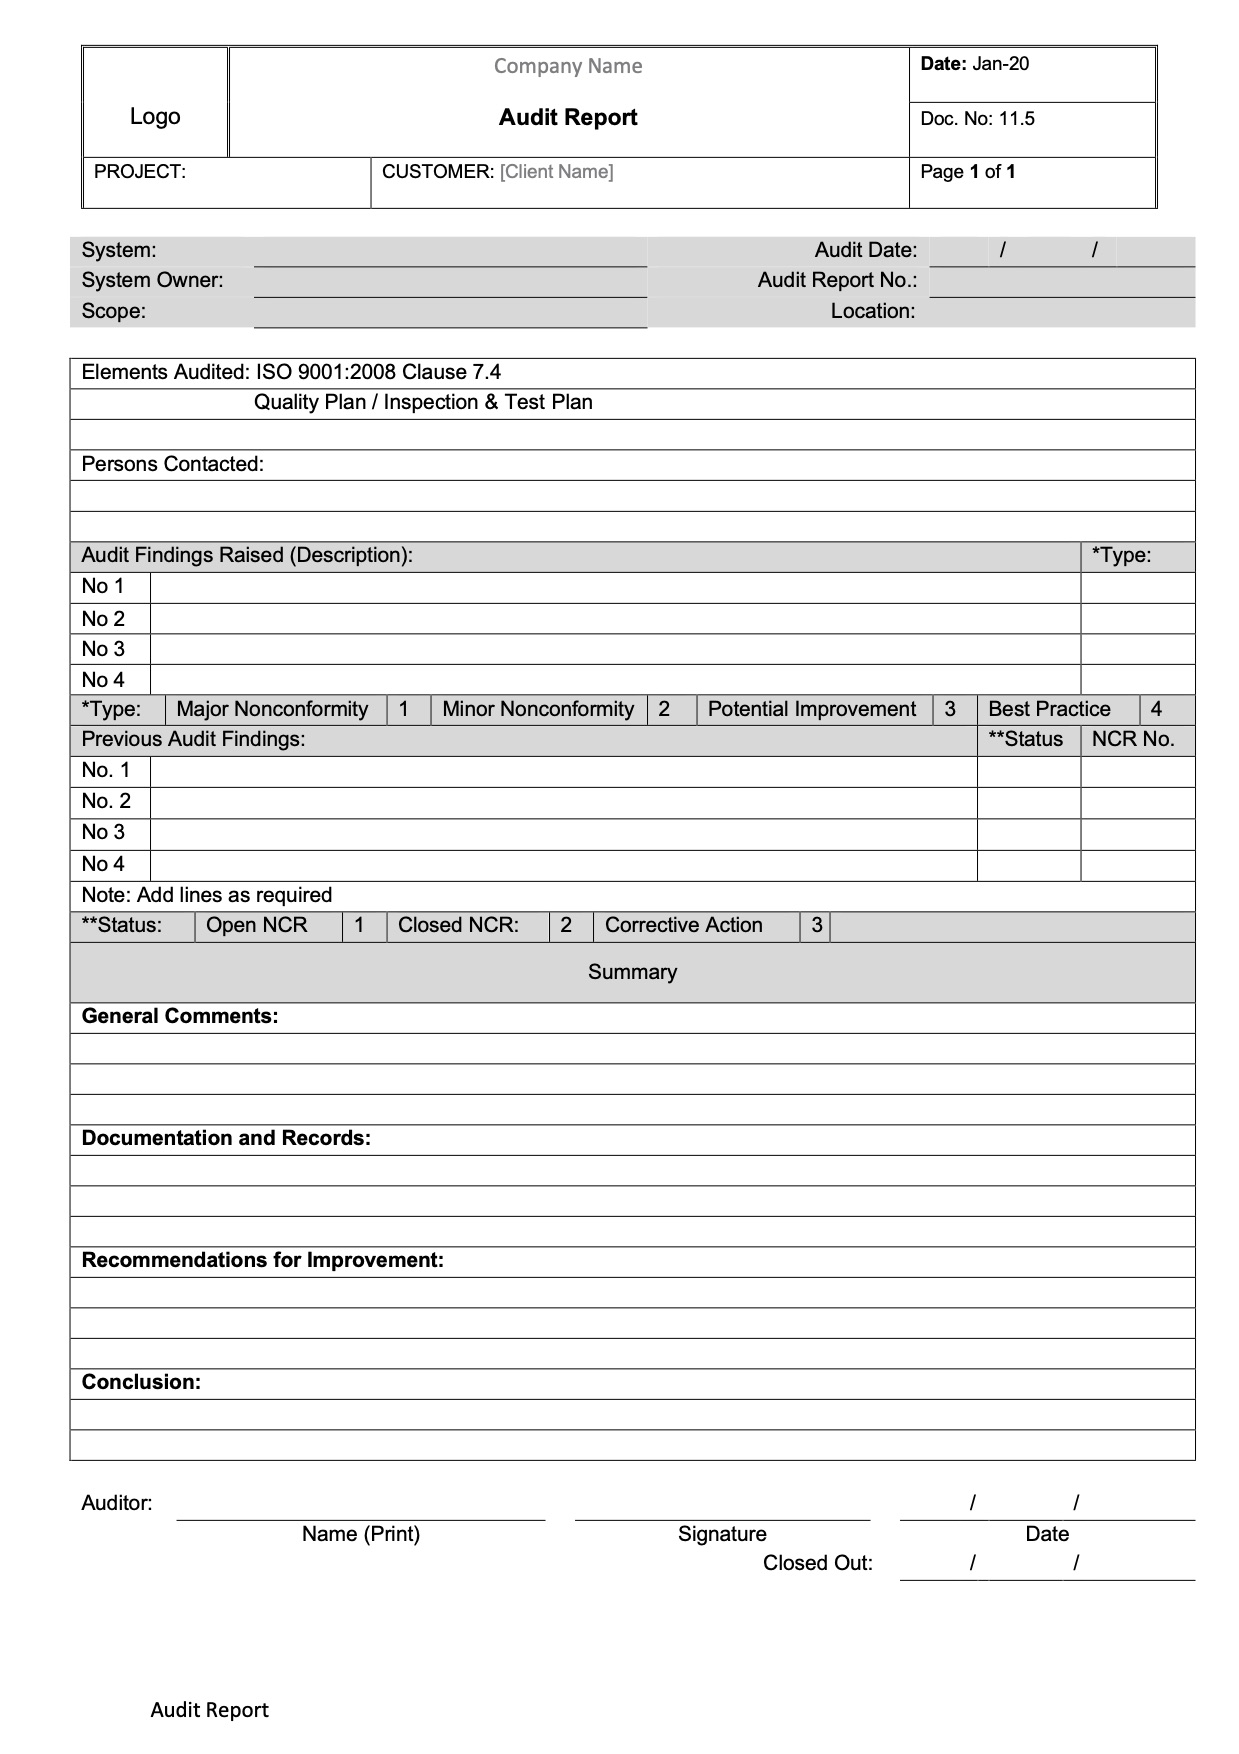 CT0012 - Audit Report